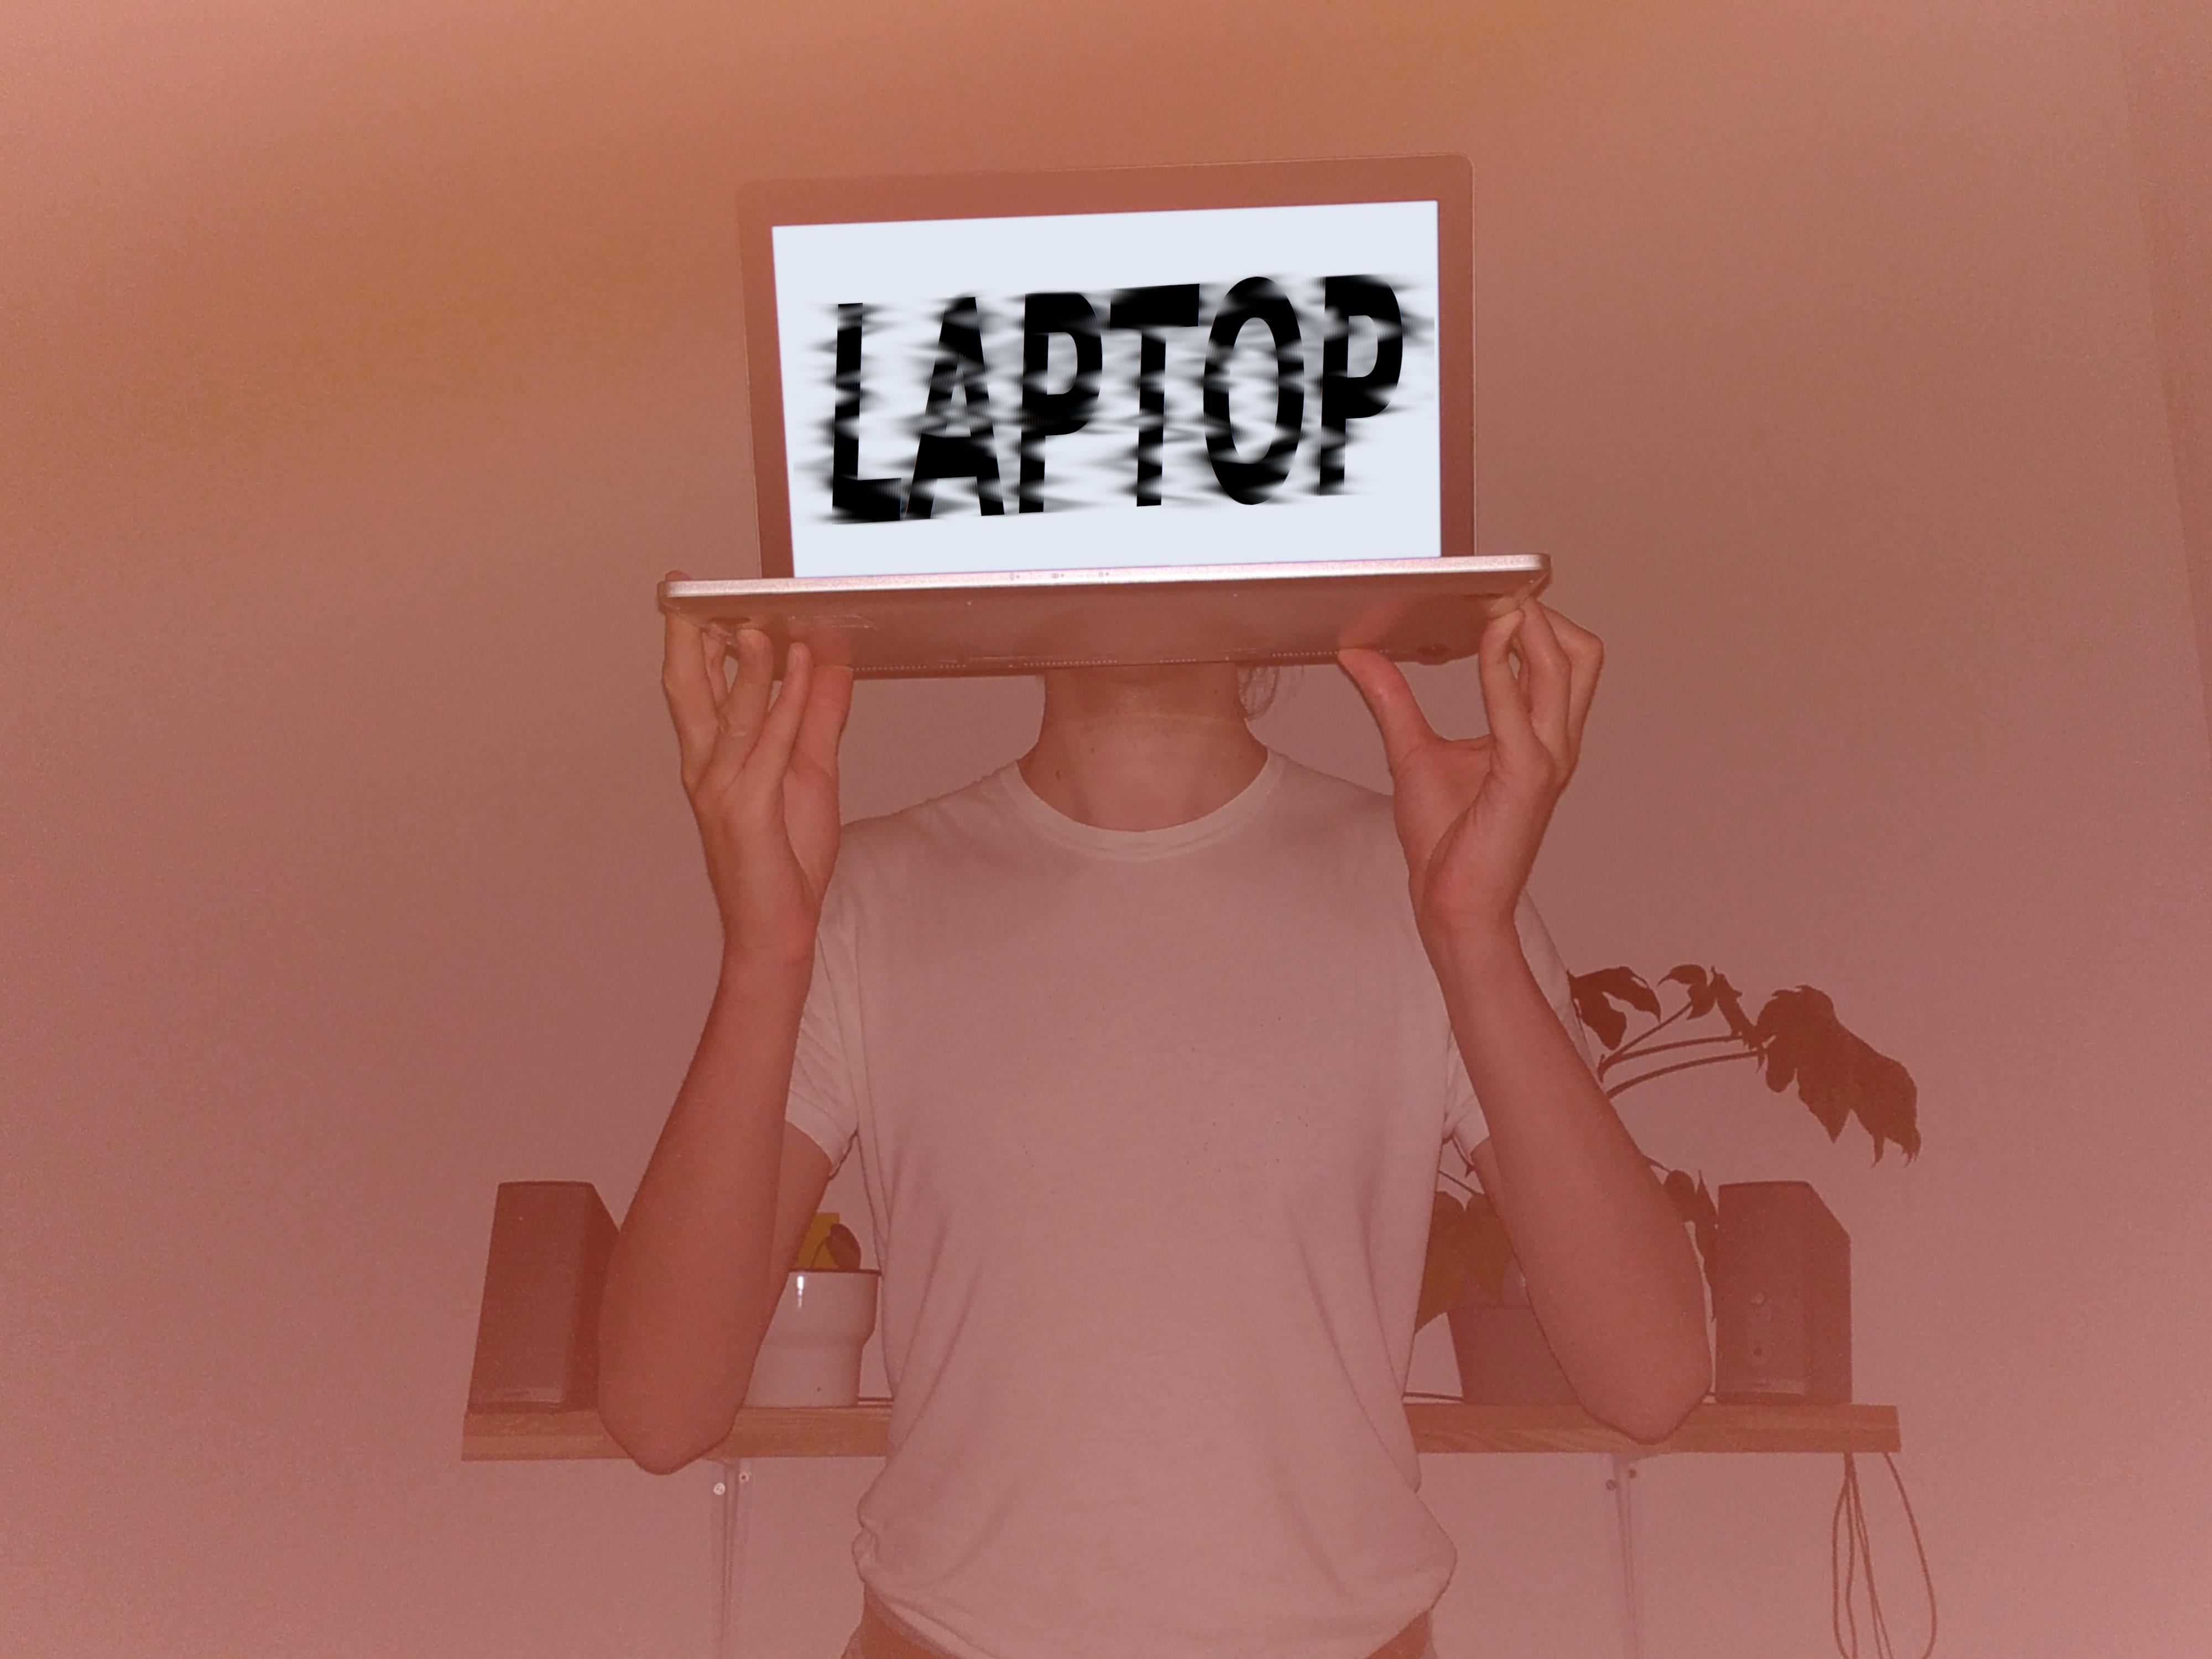 Foto von Simon Bahr, der sich einen Laptop vor seinen Kopf hält.